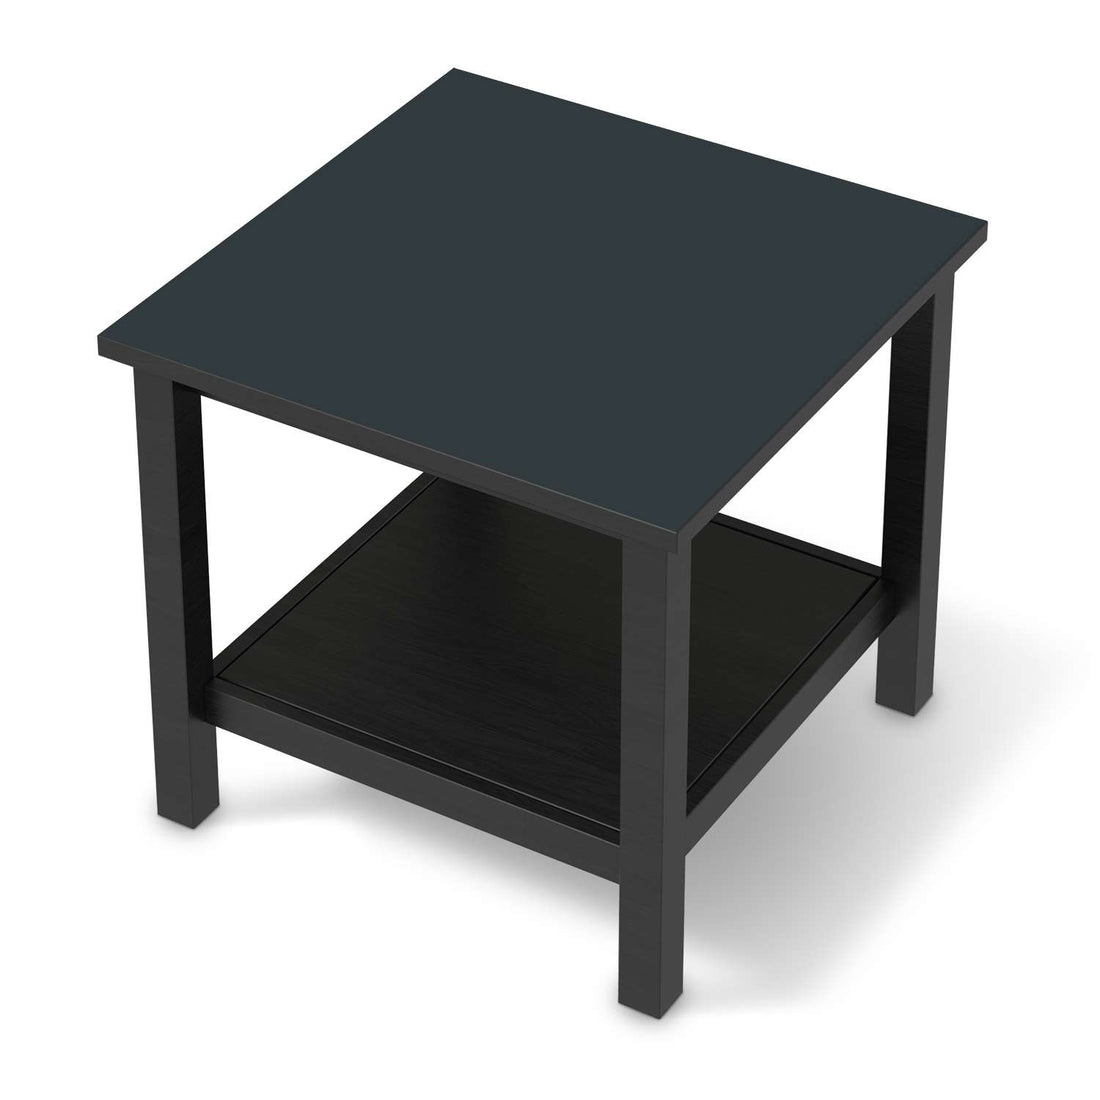 Möbel Klebefolie Blaugrau Dark - IKEA Hemnes Beistelltisch 55x55 cm - schwarz